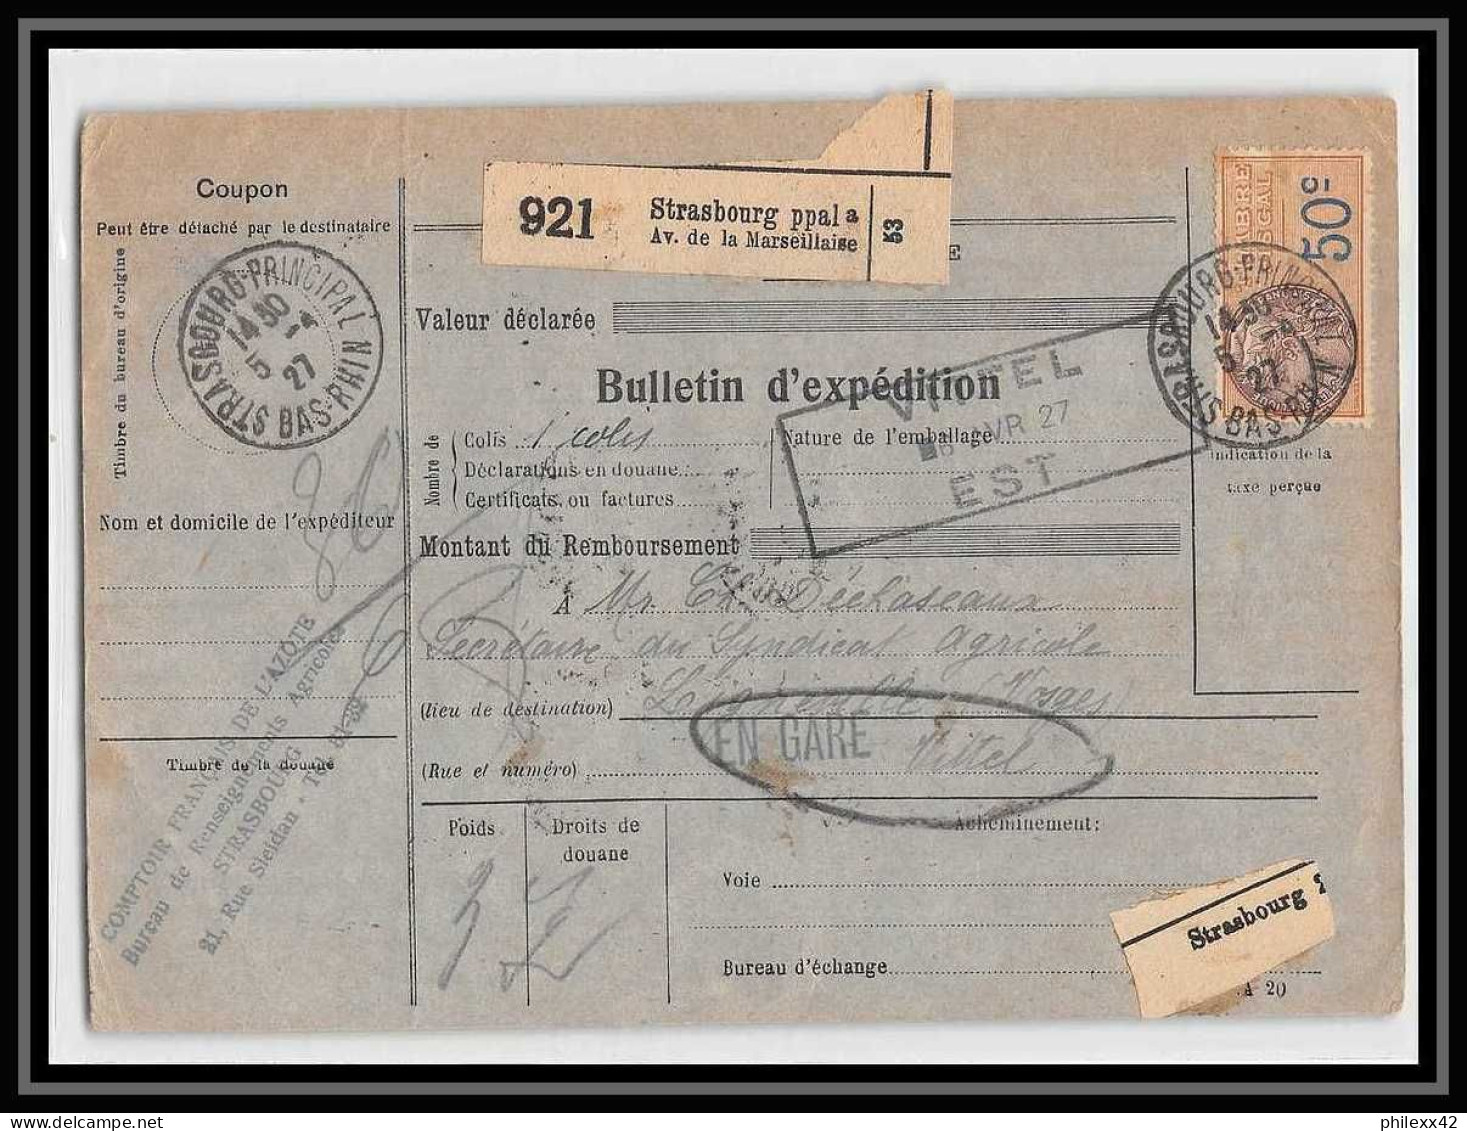 25270/ Bulletin D'expédition France Colis Postaux Fiscal Strasbourg Ppal Pour Lignéville Vosges En Gare 1927 Merson 145 - Covers & Documents